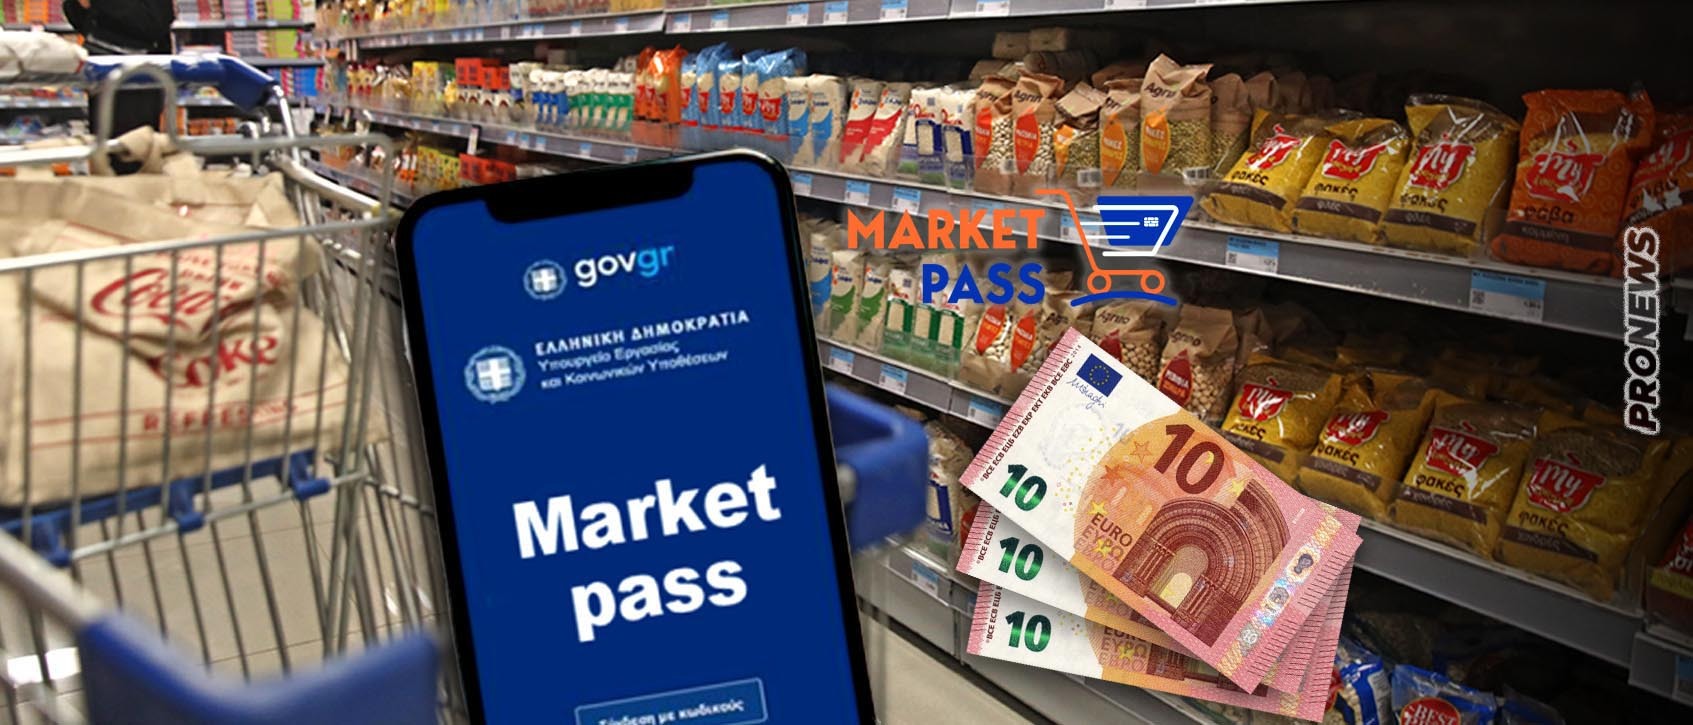 Η αντίδραση των πολιτών για το Market Pass: «33 ευρώ το μήνα; – Δεν θέλουμε άλλη κοροϊδία – Αρκετά πια» (βίντεο)